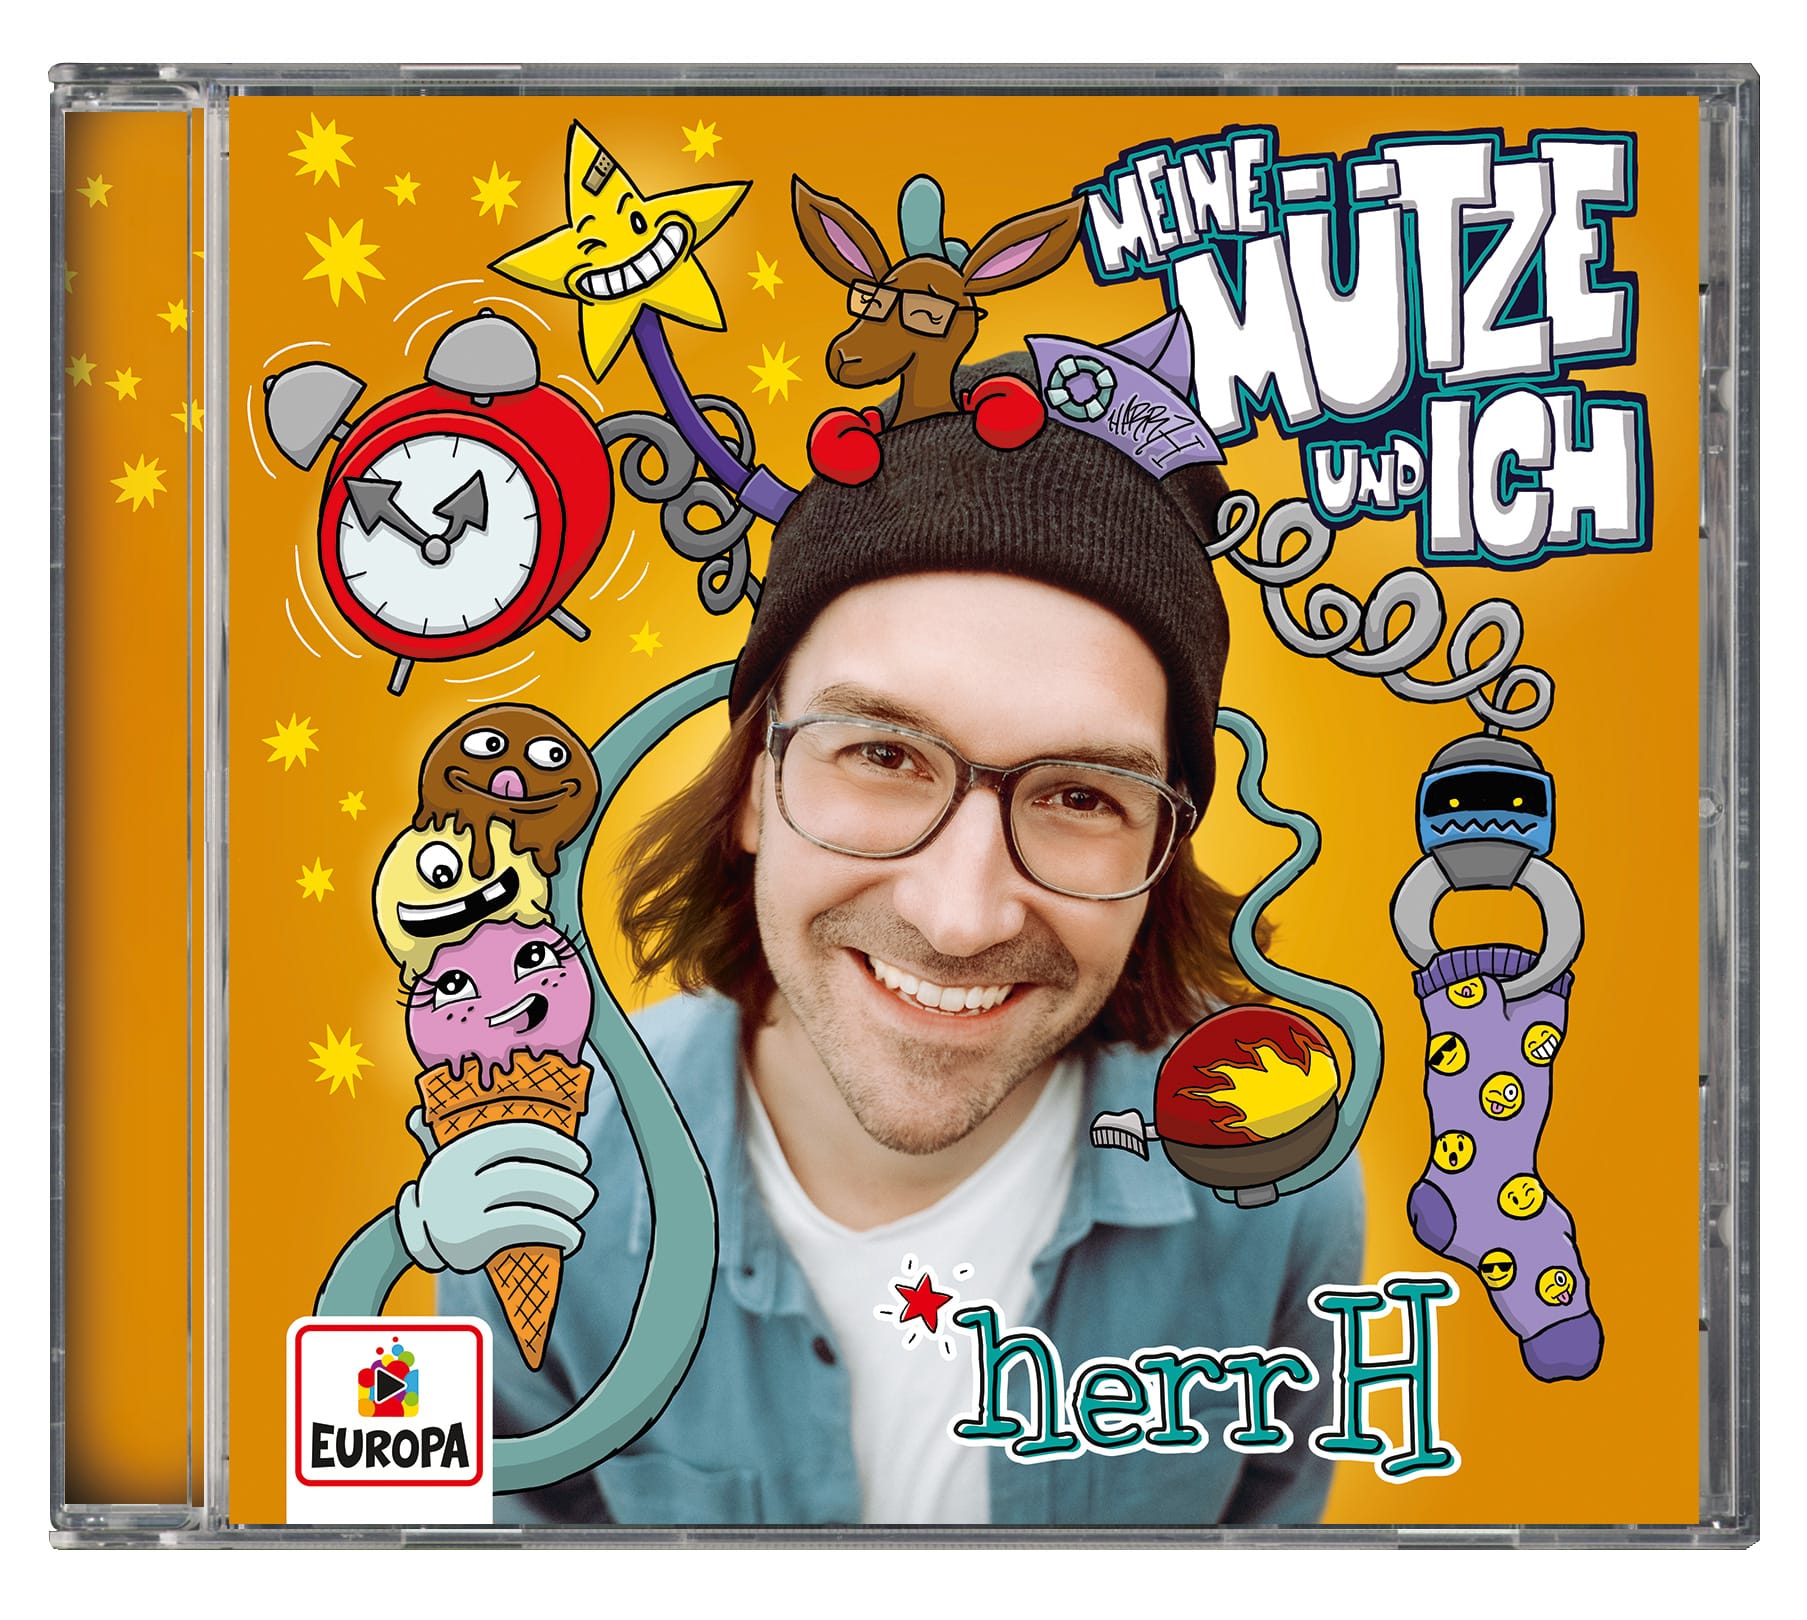 herrH-MeineMuetze-CD